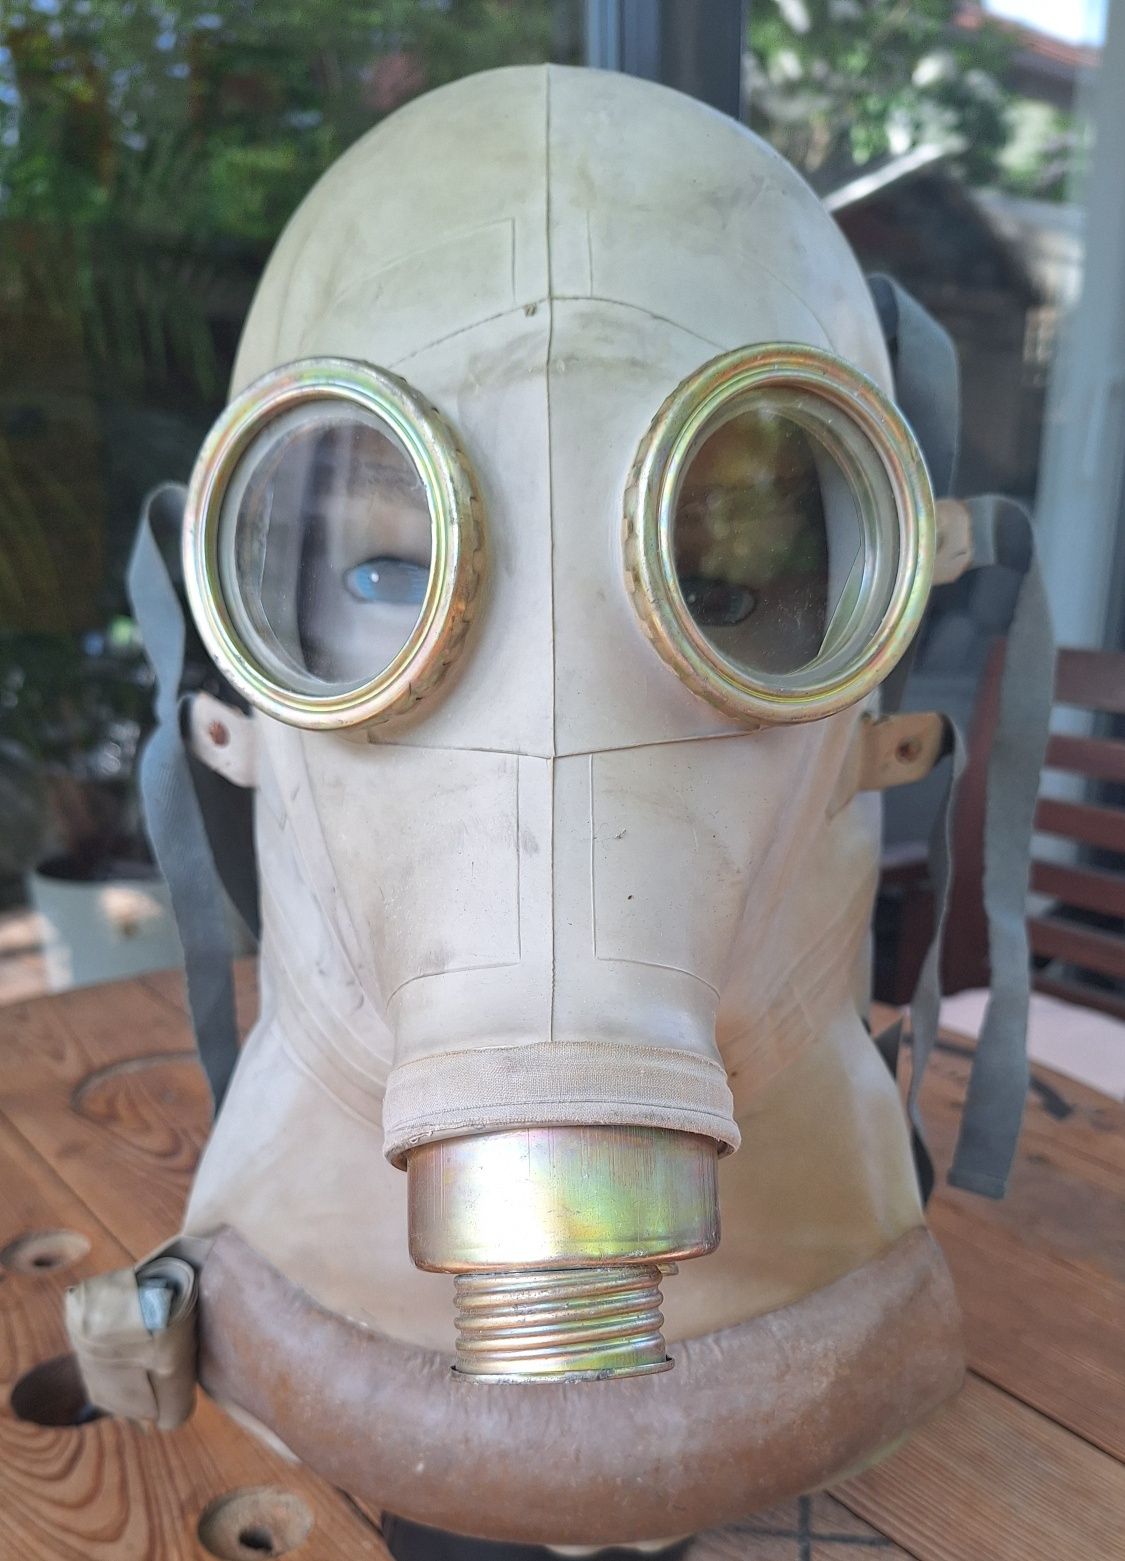 Maska przeciwgazowa SR-1 kolekcjonerska